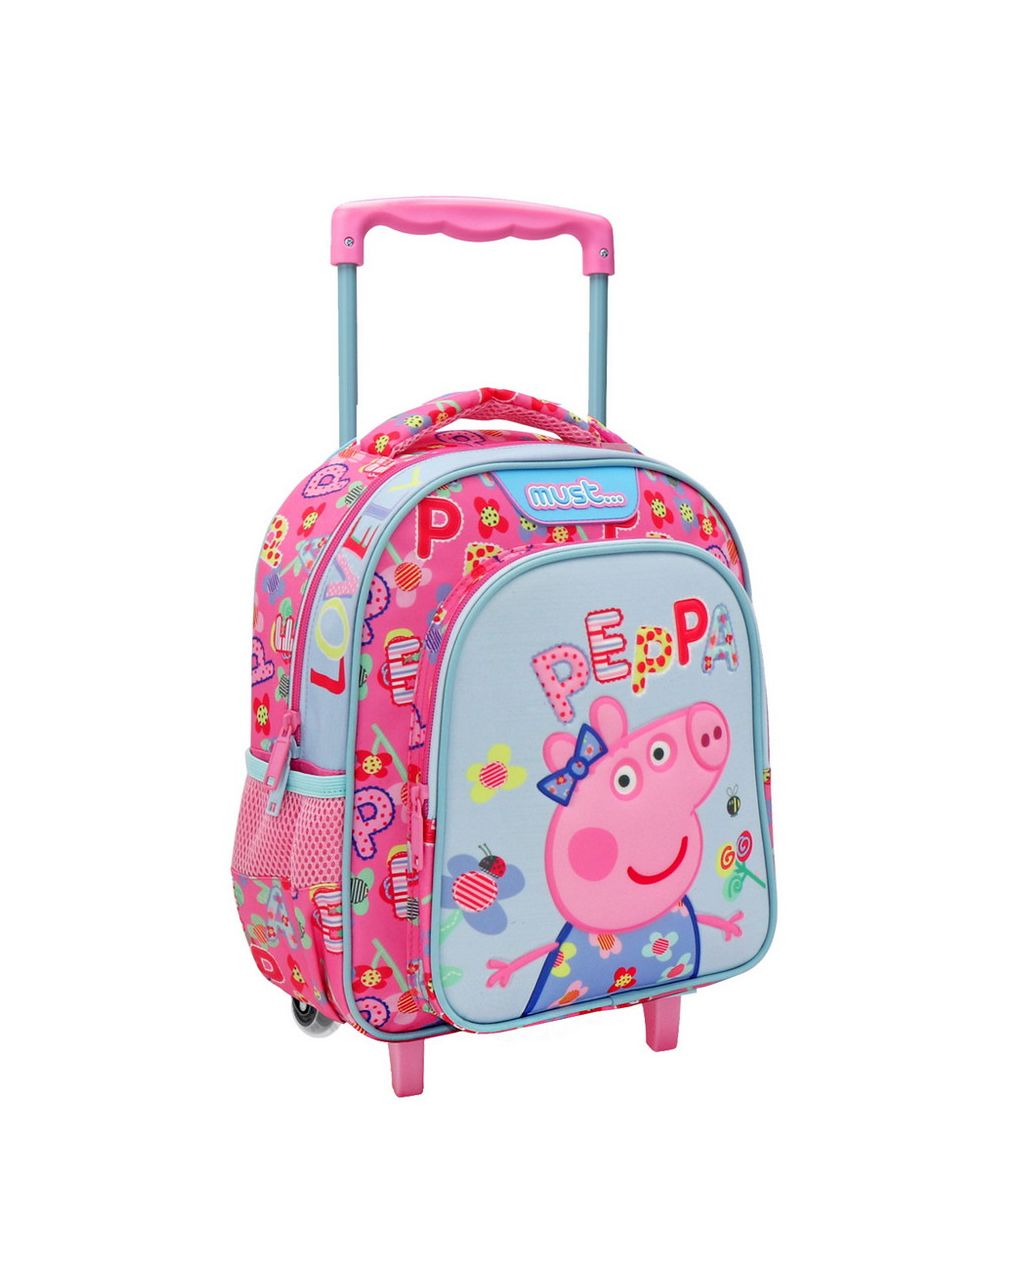 σχολική τσάντα τρόλεϊ νηπίου peppa pig lovely must 2 θήκες  000482744 - must